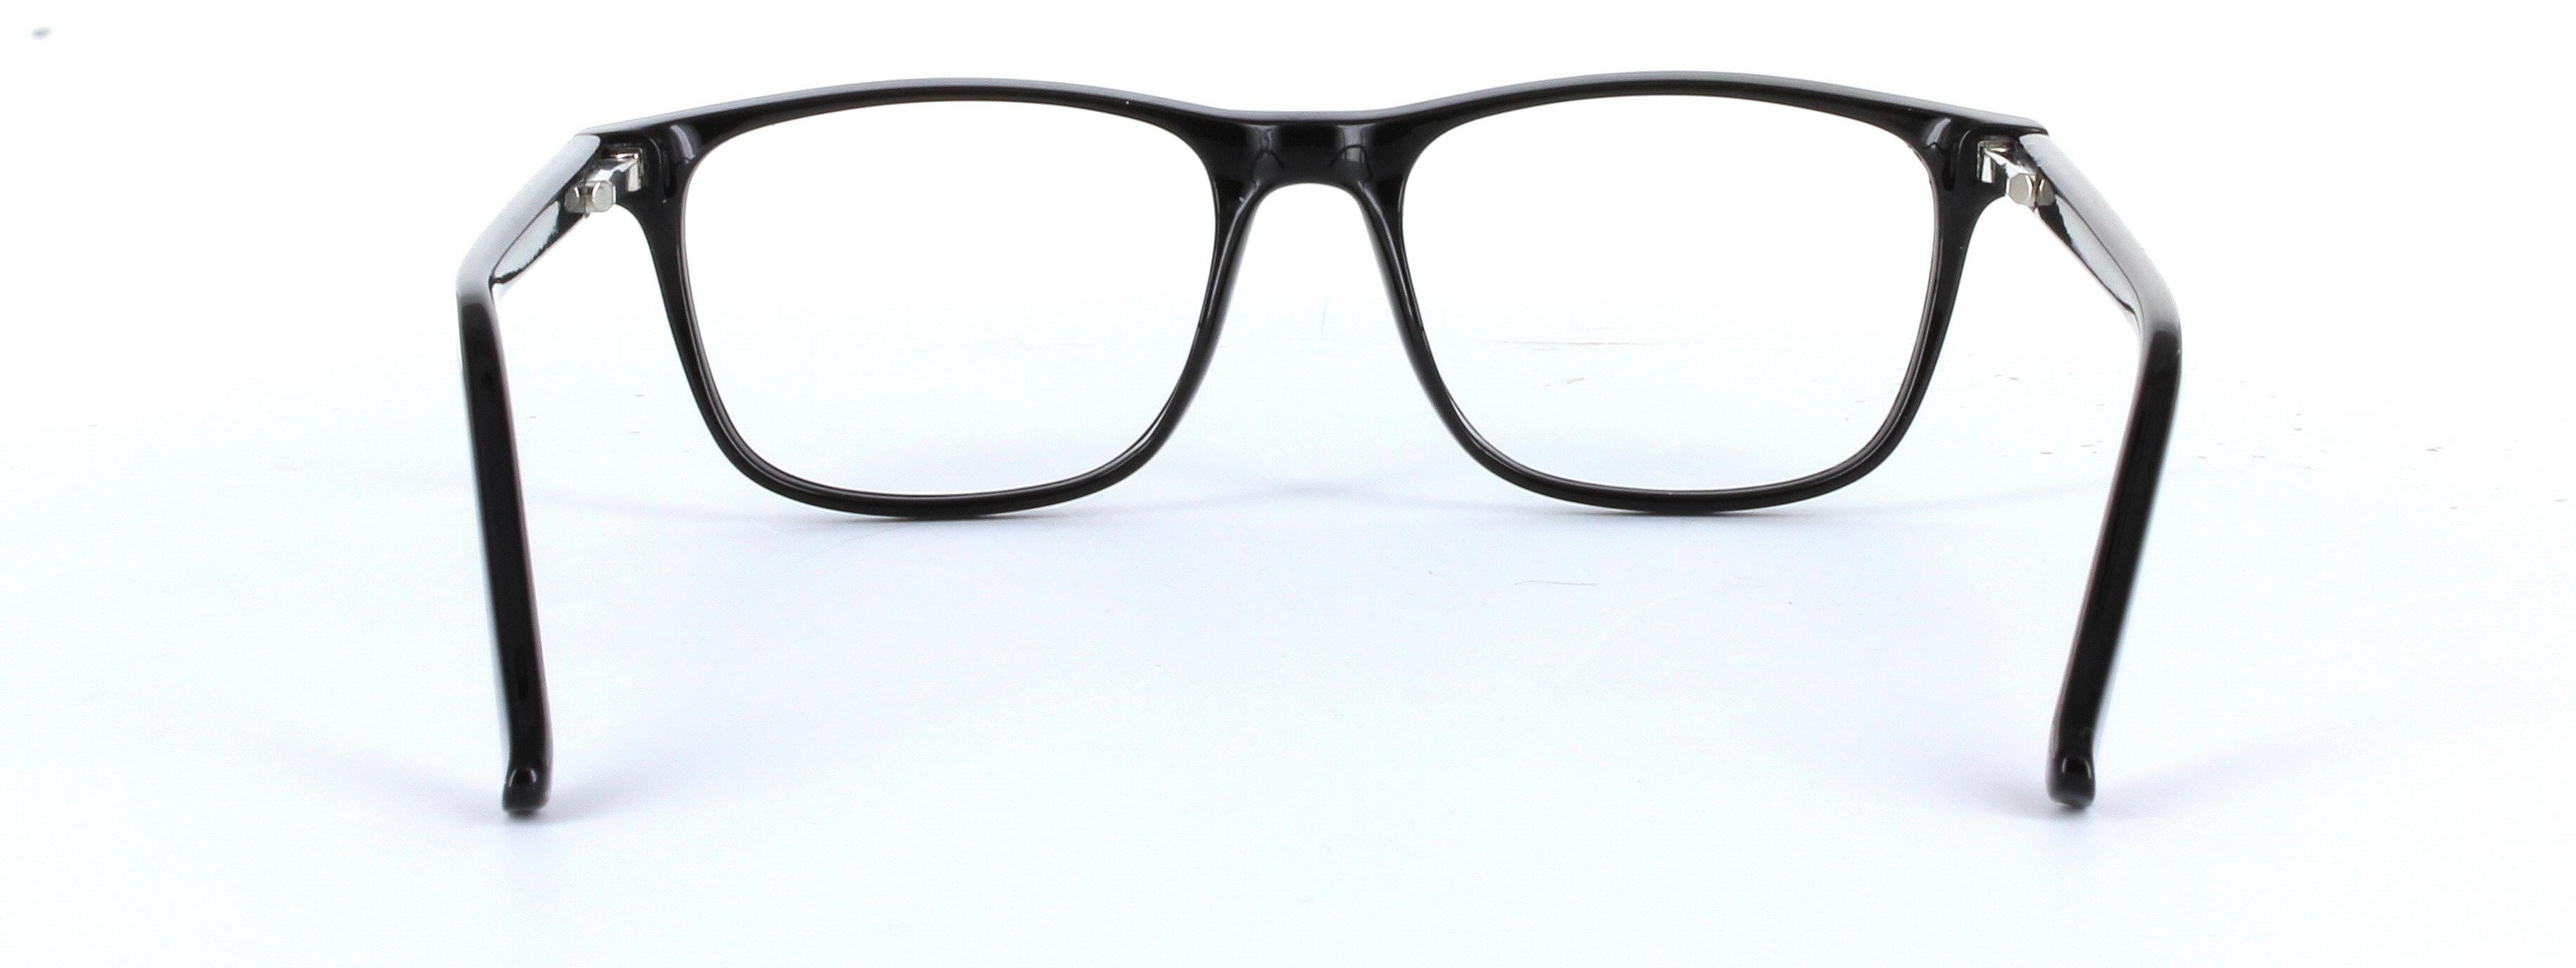 Consul Black Full Rim Oval Round Plastic Glasses - Image View 3